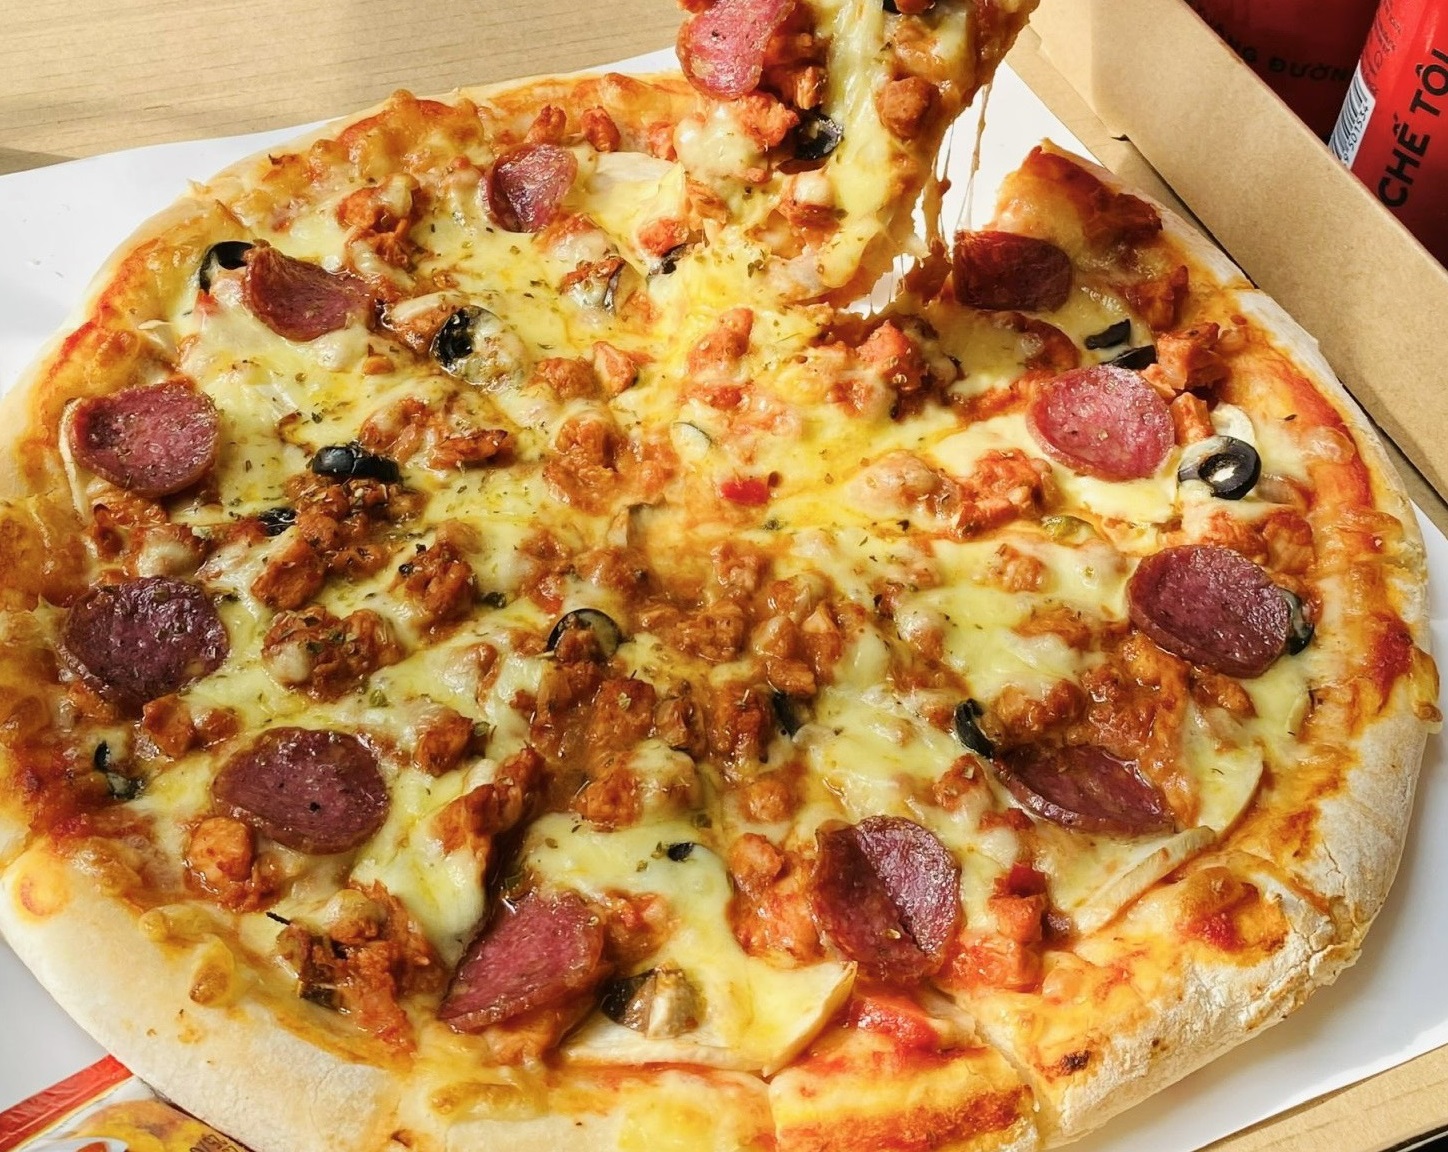 TexGrill còn nổi tiếng với các loại pizza chuẩn vị Ý